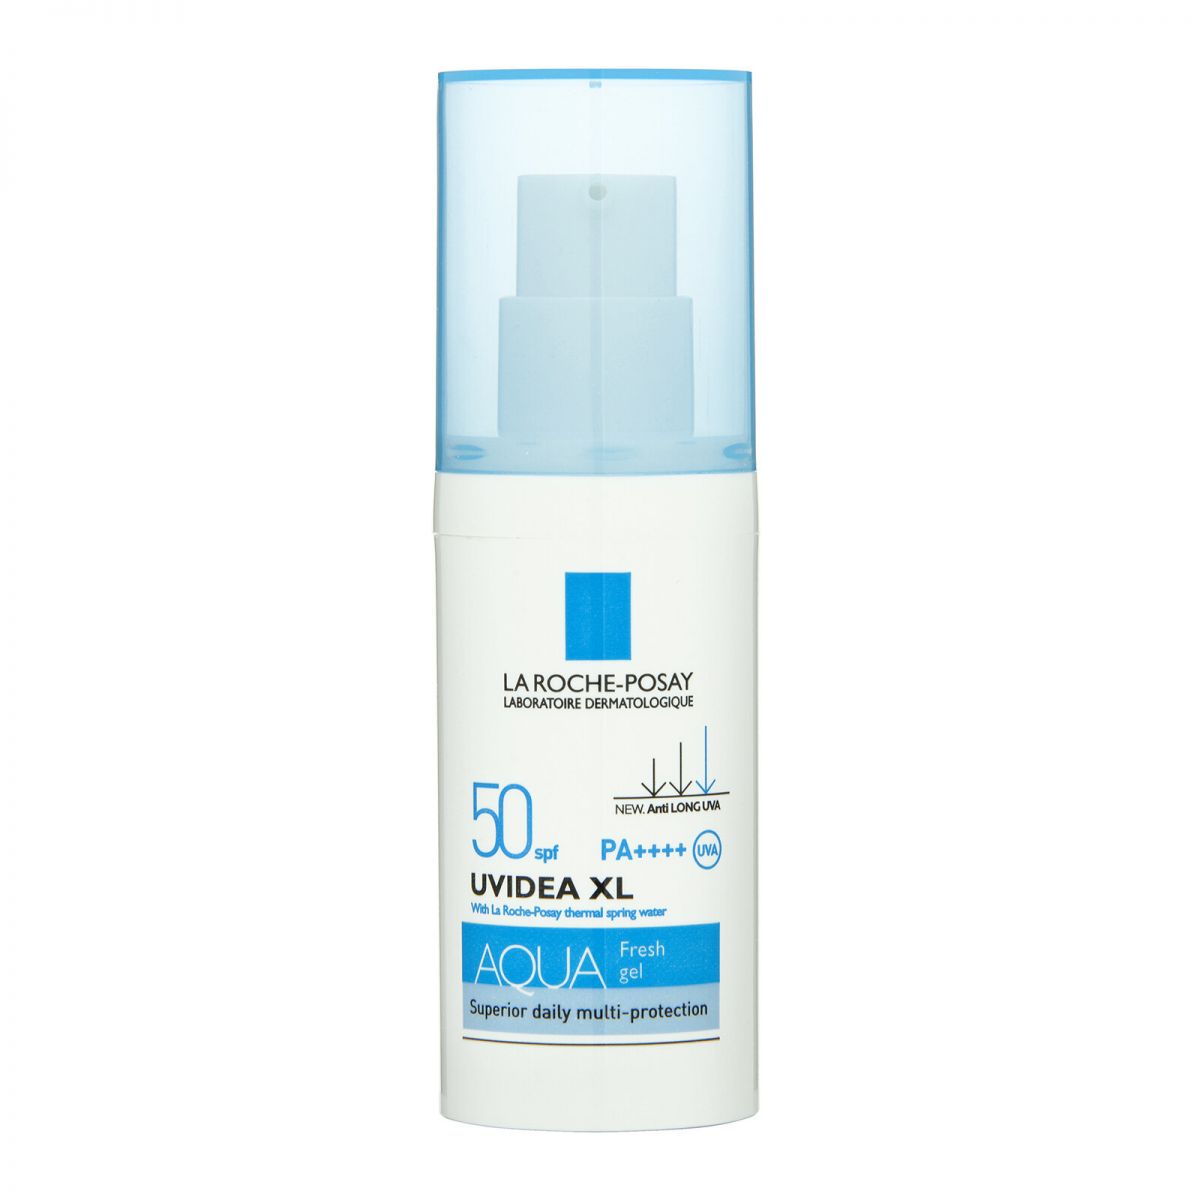 Kem chống nắng dạng gel La Roche-Posay Uvidea XL Aqua Fresh Gel phù hợp với cả làn da nhạy cảm